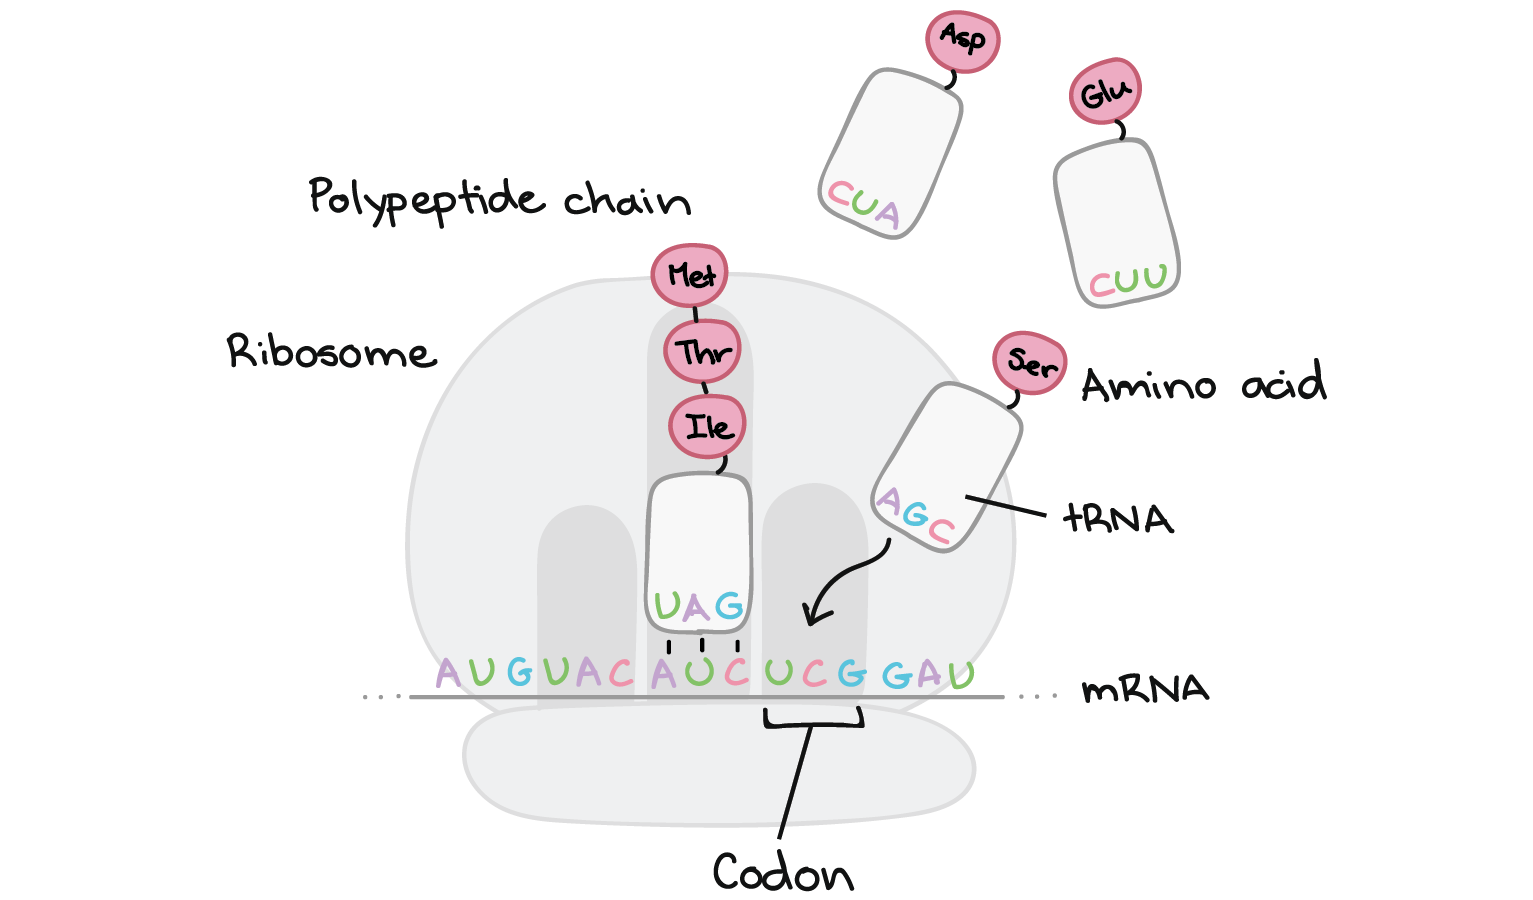 Tradução ocorrendo num ribossomo. O RNAm é ligado ao ribossomo onde pode interagir com a molécula de RNAt.

Nesta imagem, o RNAm tem a sequência de:

3'-...AUG UAC AUC UCG GAU...-5'

Um RNAt ligado ao terceiro códon (5'-AUC-3') tem uma sequência complementar de 3'-UAG-5'. Ele carrega uma cadeia de polipeptídeos consistindo de metionina e isoleucina, que estão ligadas ao RNAt pela isoleucina. A direita deste RNAt, outro RNAt está se ligando ao próximo códon (5'-UGC-3'). Este RNAt também tem um uma sequência complementar de nucleotídeos (3'-AGC-5') e carrega o aminoácido serina, que é o aminoácido especificado pelo códon do RNAm. A serina levada por este RNAt será adicionada à cadeia de polipeptídeo que está crescendo.

Outros RNAts carregando outros aminoácidos estão flutuando no entorno. Um carrega Glu (ácido glutâmico) e tem uma sequência de nucleotídeos em seu final que lê 3'-CUU-5'. O outro carrega Asp (ácido aspártico) e tem uma sequência de nucleotídeos em seu final, que lê 3'-CUA-5'.